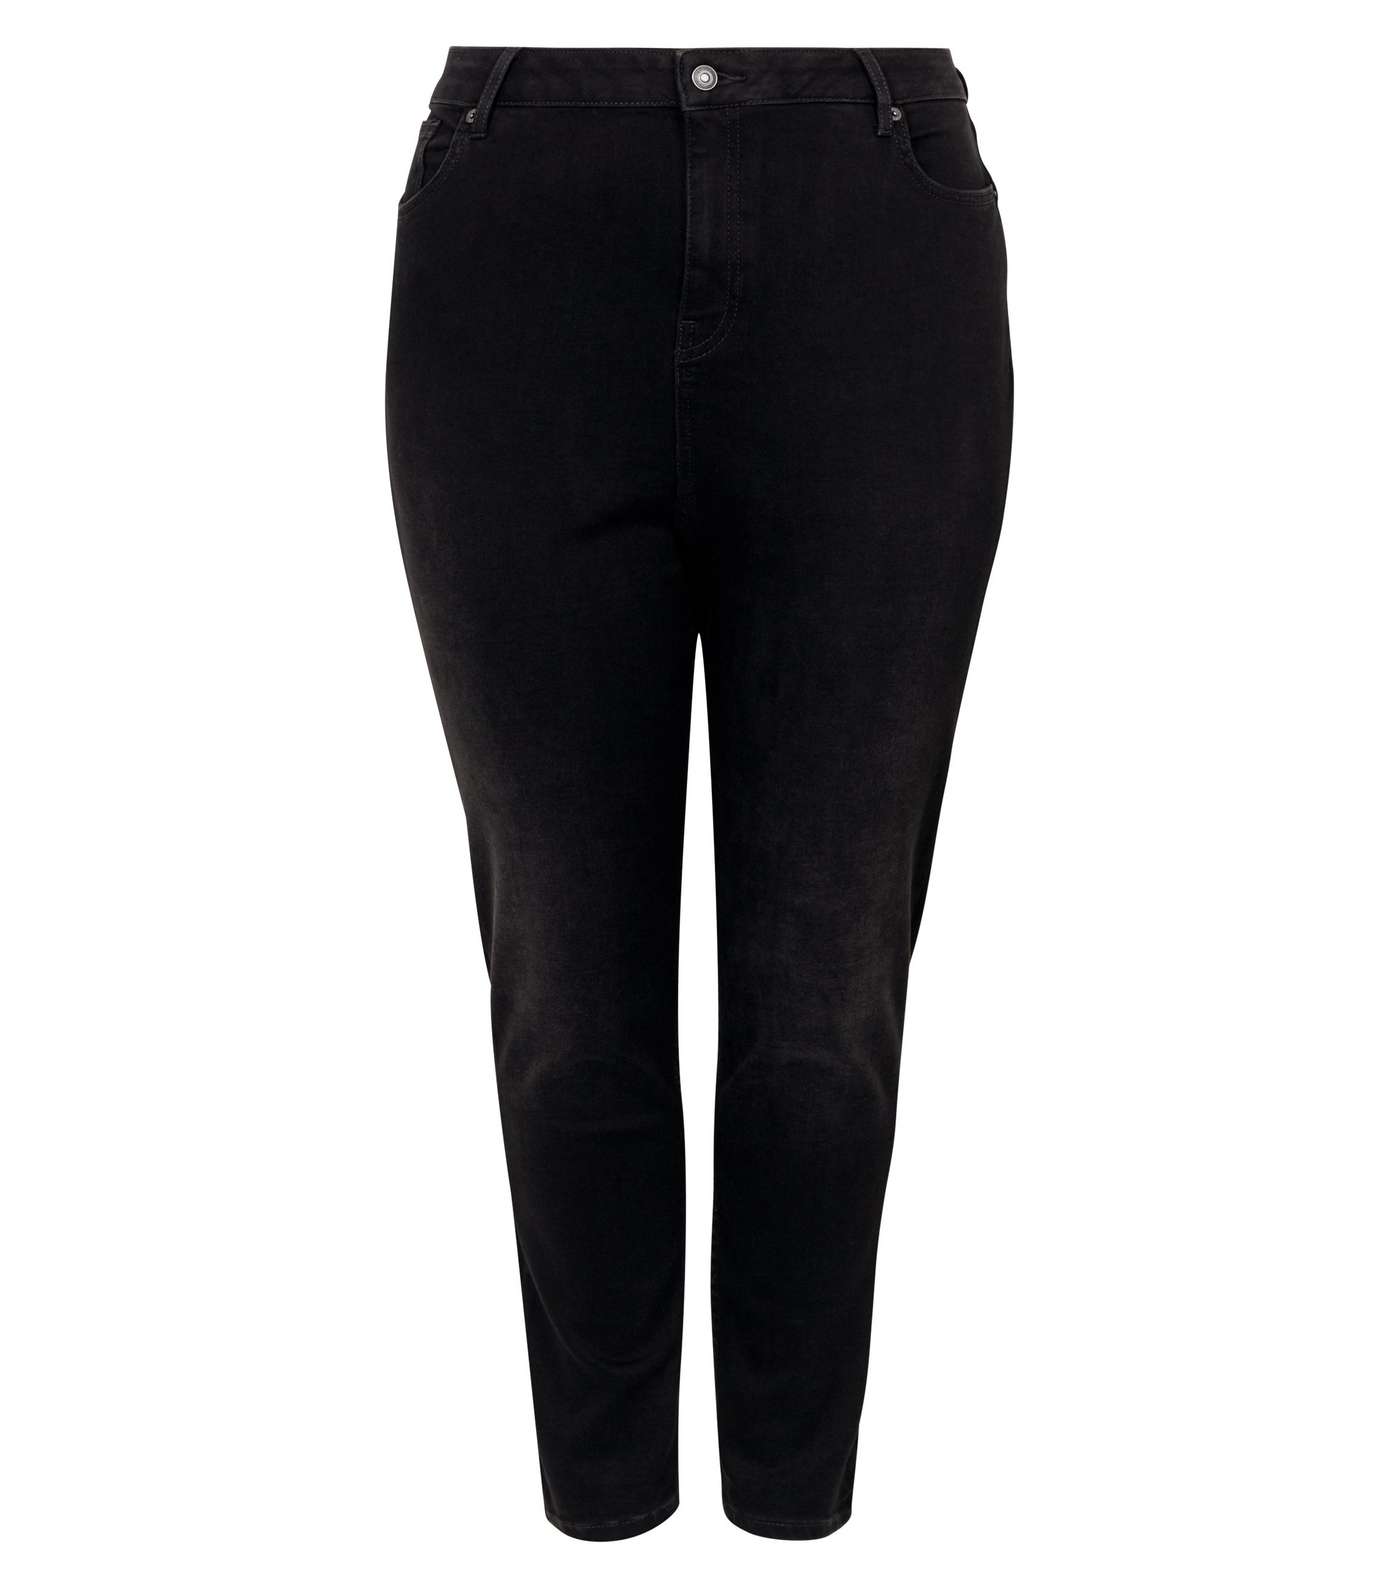 Curves Black 'Lift & Shape' Jenna Skinny Jeans Image 5